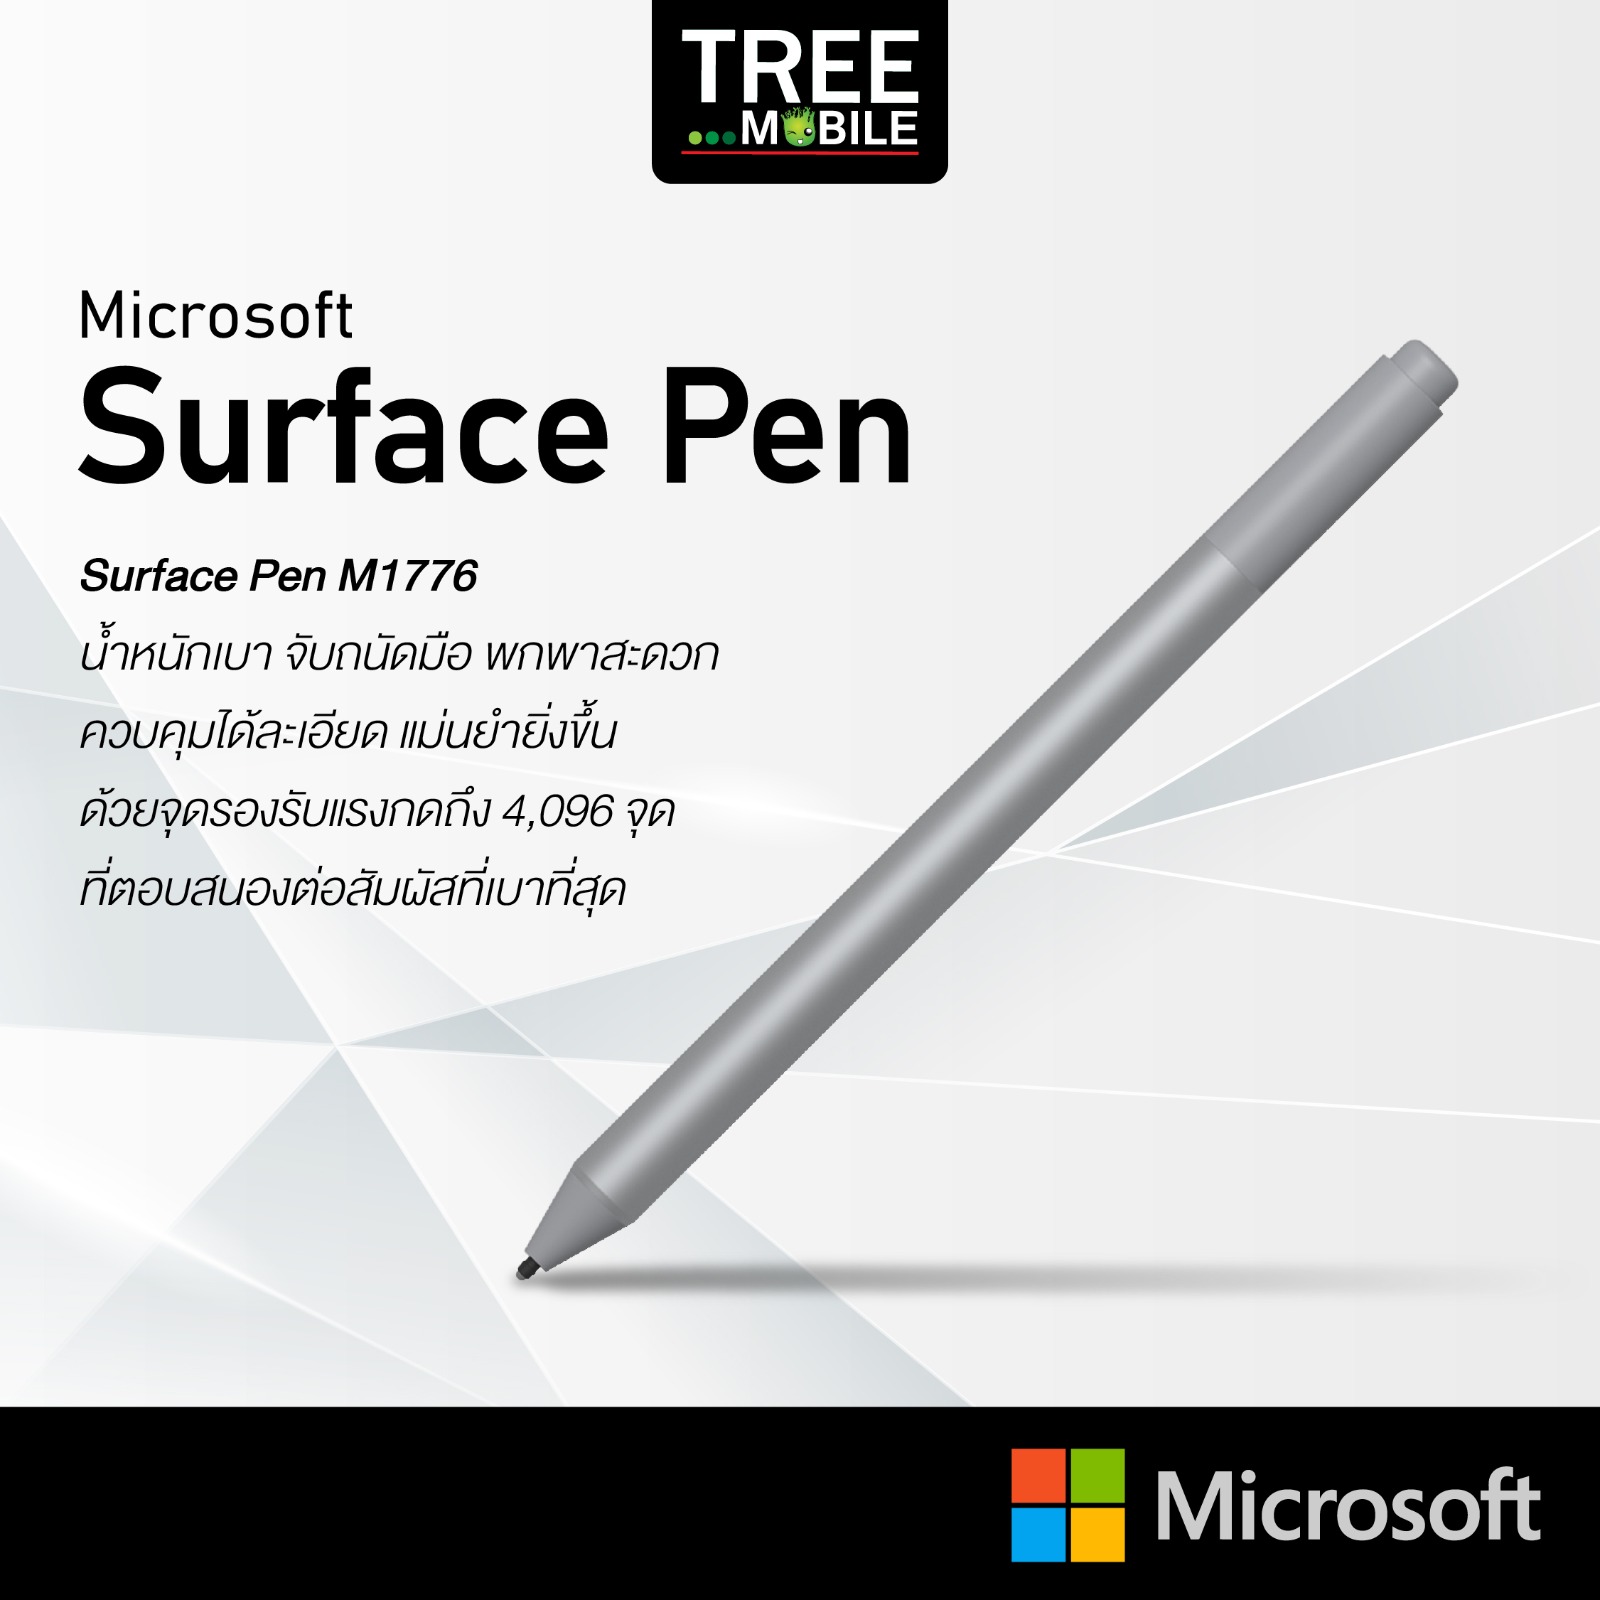 ปากกา Surface Pen M1776 Microsoft Tablet Acc SurfacePen M1776 รับประกัน 1 ปี ราคาถูก ร้าน TreeMobile / Tree Mobile